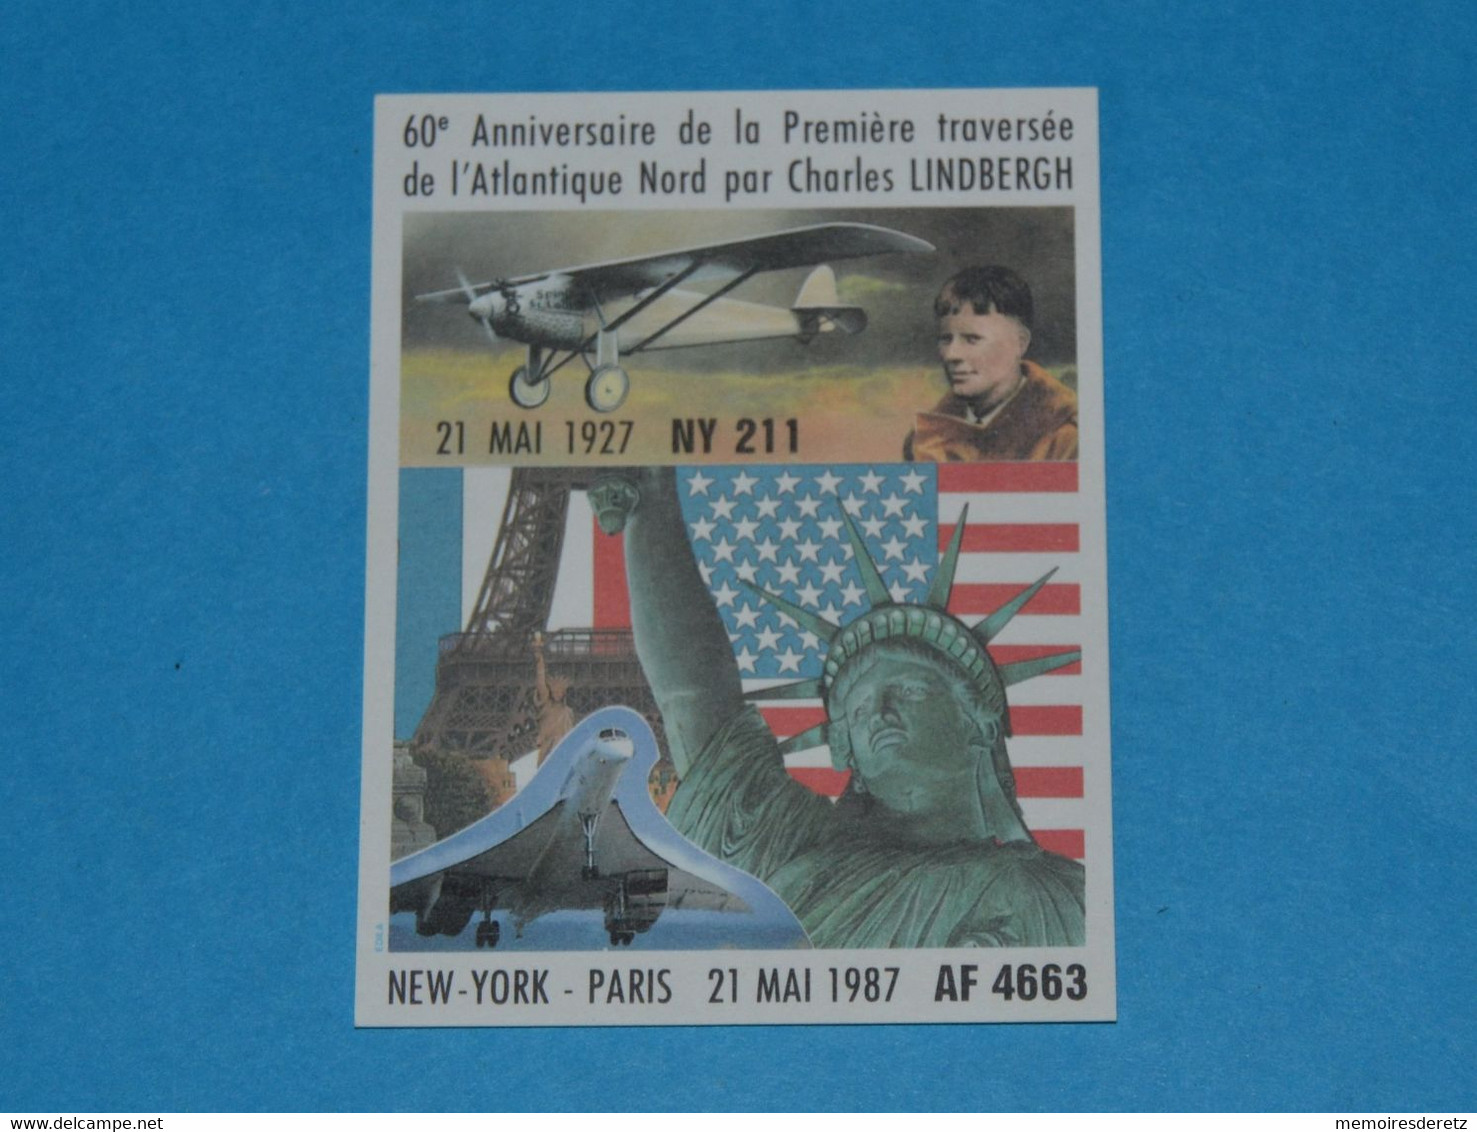 Avion CONCORDE - Autocollant Sticker -NEW-YORK PARIS 21 Mai 1987 60ème Anniversaire LINDBERGH Tour Eiffel Statue Liberté - Stickers